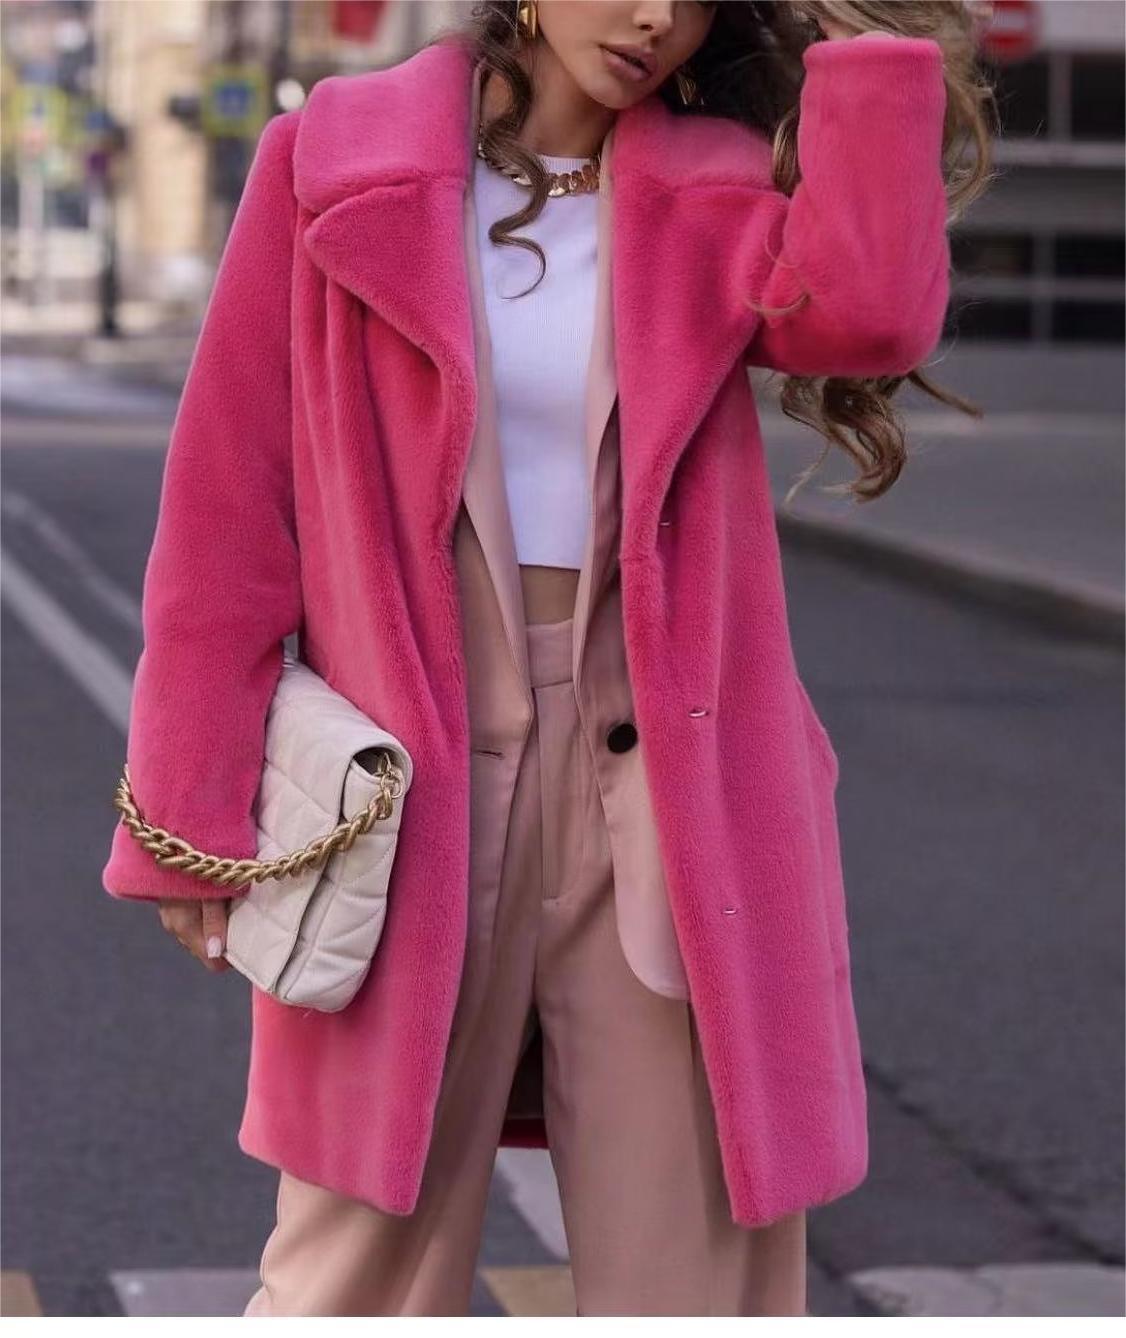 Women's Long Imitation Fur Coat - Stay Cozy and Fashionable - ForVanity coat, Fuzzy Coats, jackets & coats, women's clothing Coat